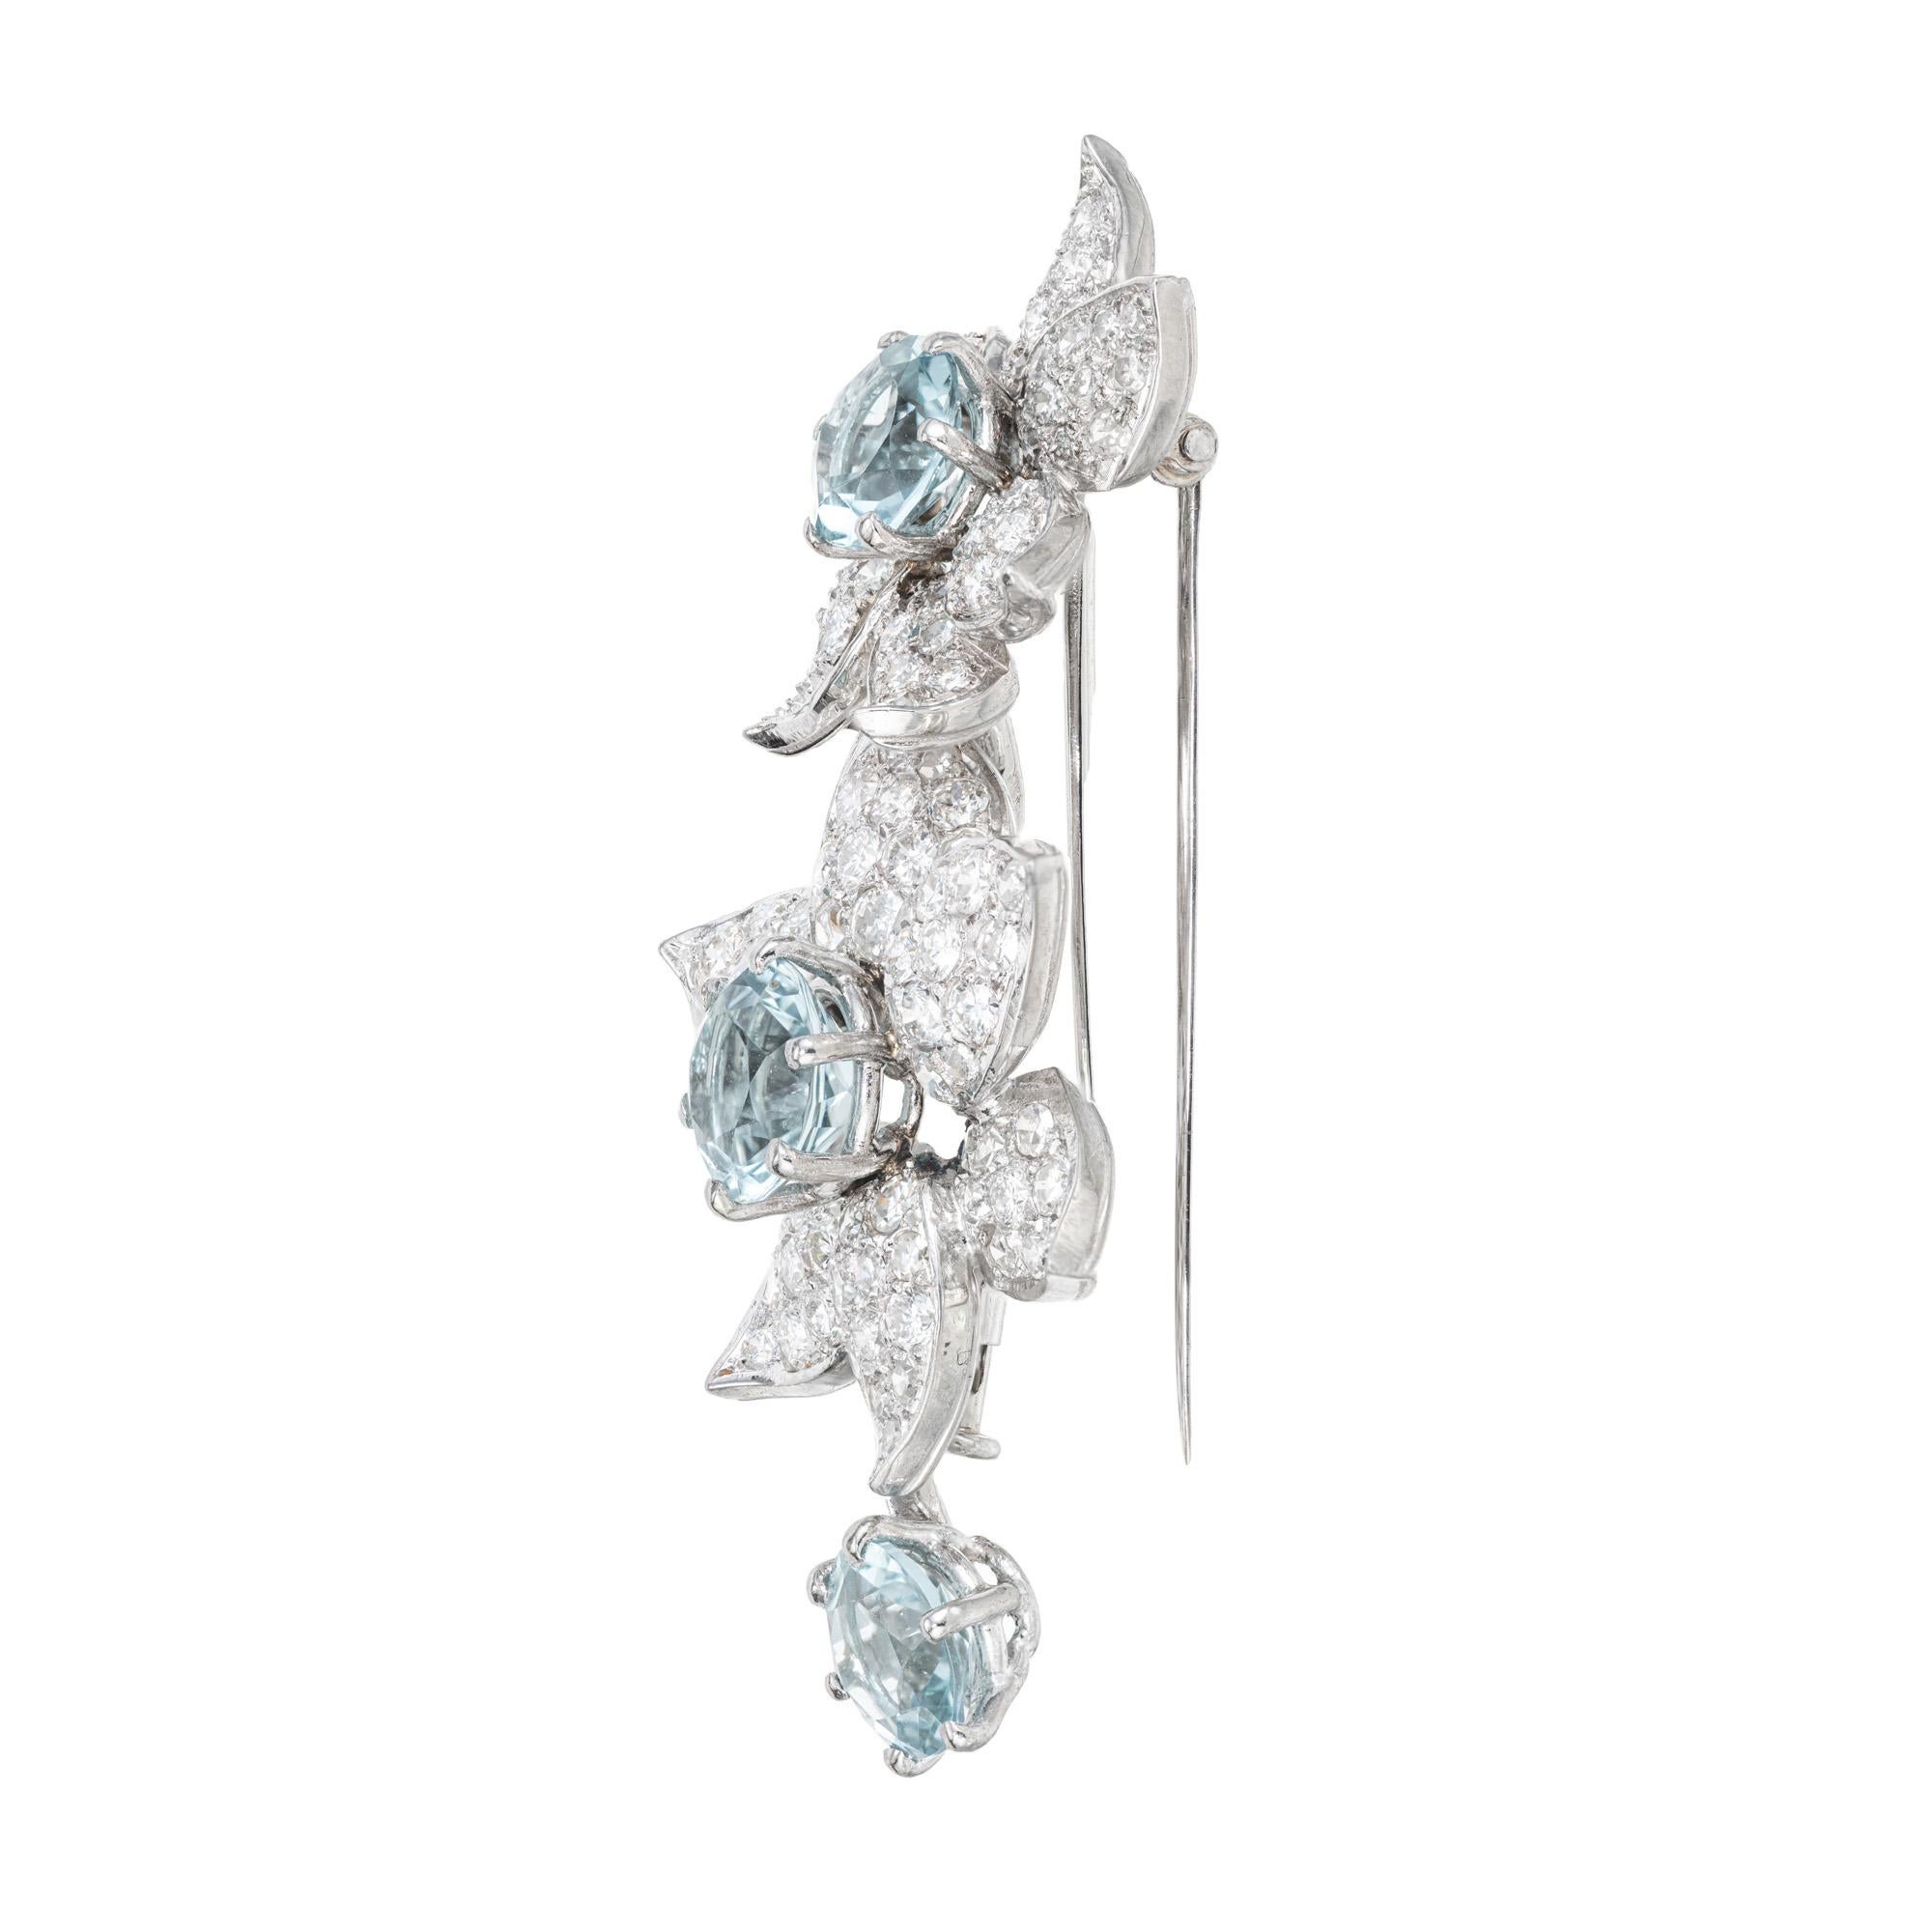 1940's Authentic Boucheron Paris Diamant Platin Blume Brosche. 3 runde Aquamarine im Gesamtwert von 3,98 ct., jeder mit einem Blumendesign mit Pflasterdiamanten besetzt. Doppelter Stiftschaft für Stabilität. 

Boucheron ist ein führendes